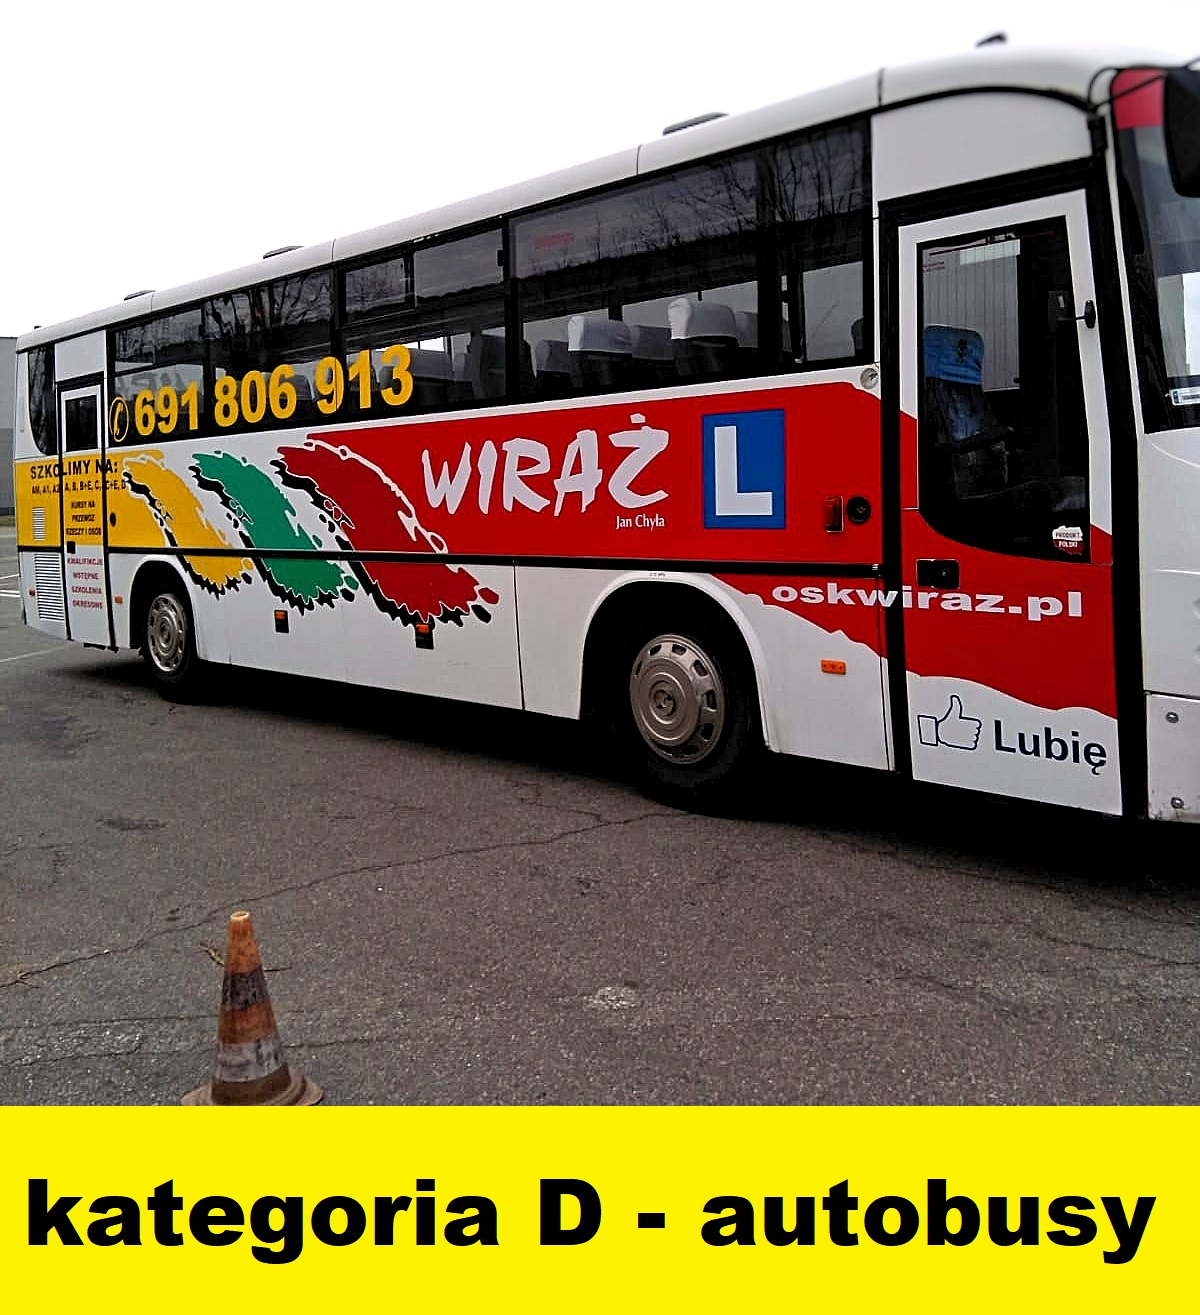 nauka jazdy autobus kategoria D swidnica, strzego, dzierzoniow, bielawa